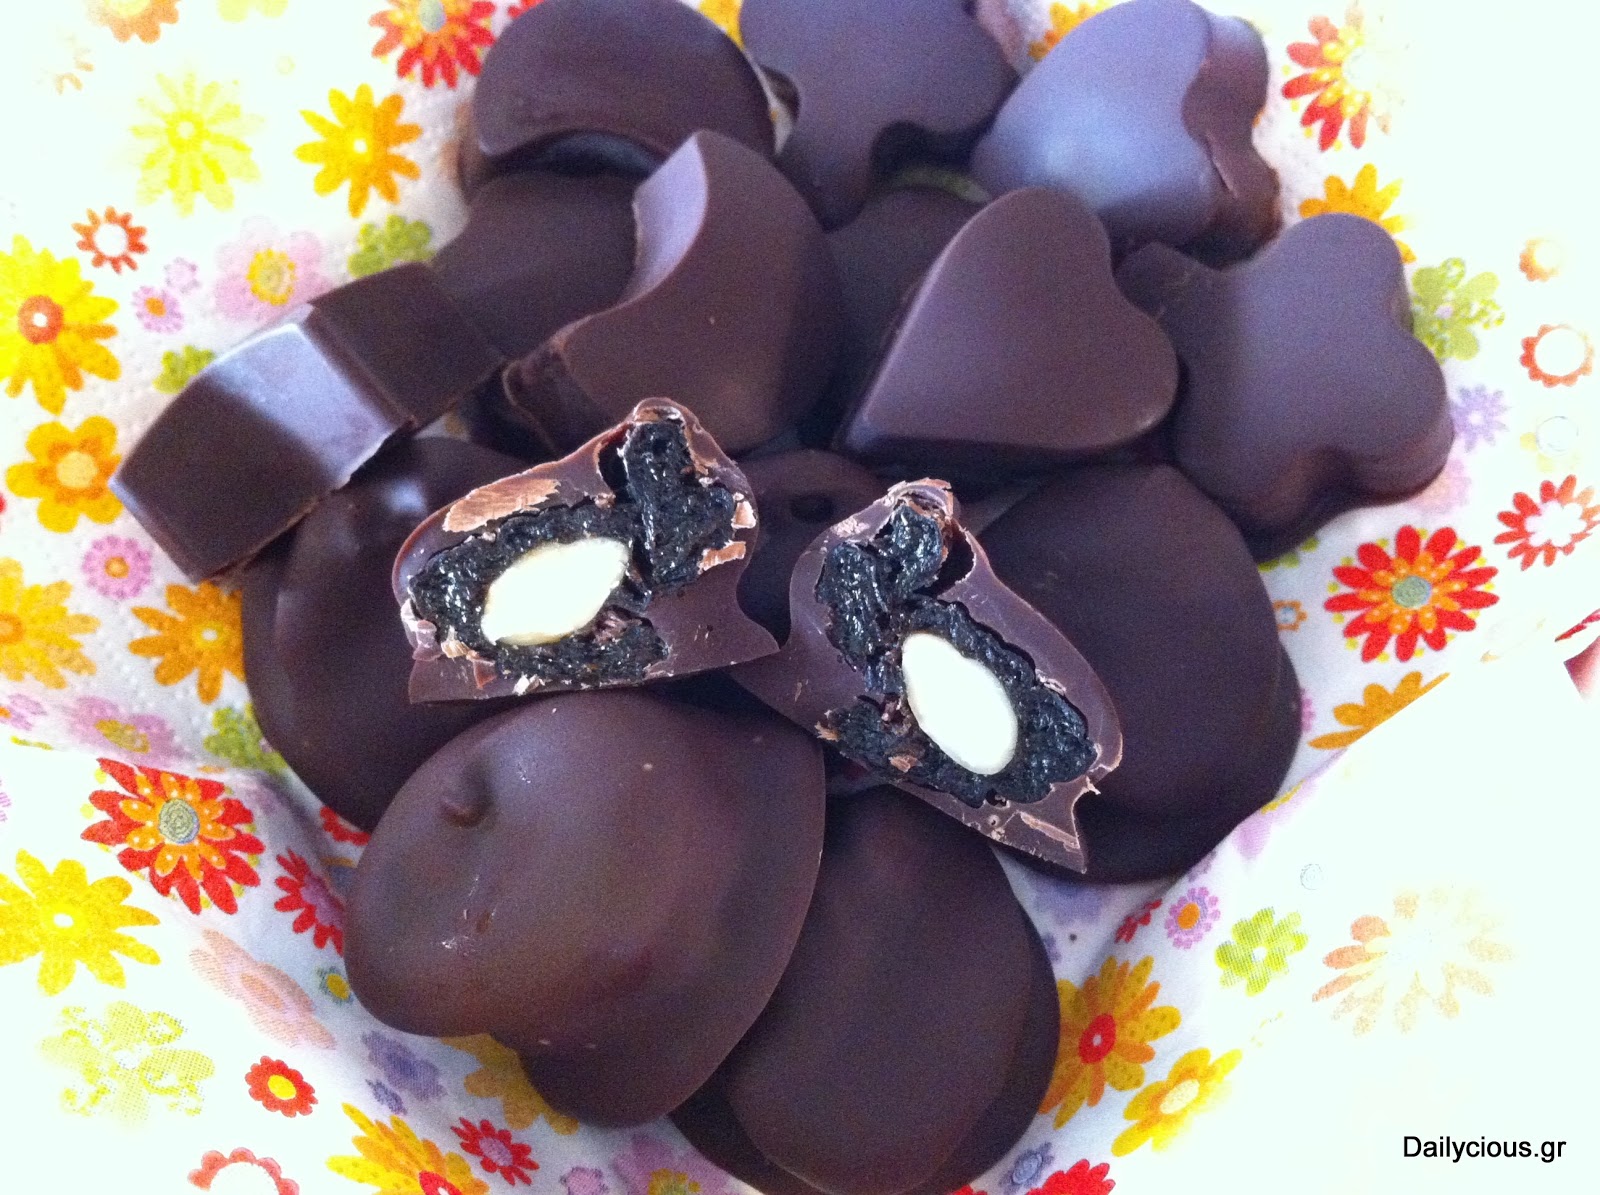 Όπως τα έφτιαχνε η μαμά: Σοκολατάκια με δαμάσκηνο και ξηρούς καρπούς